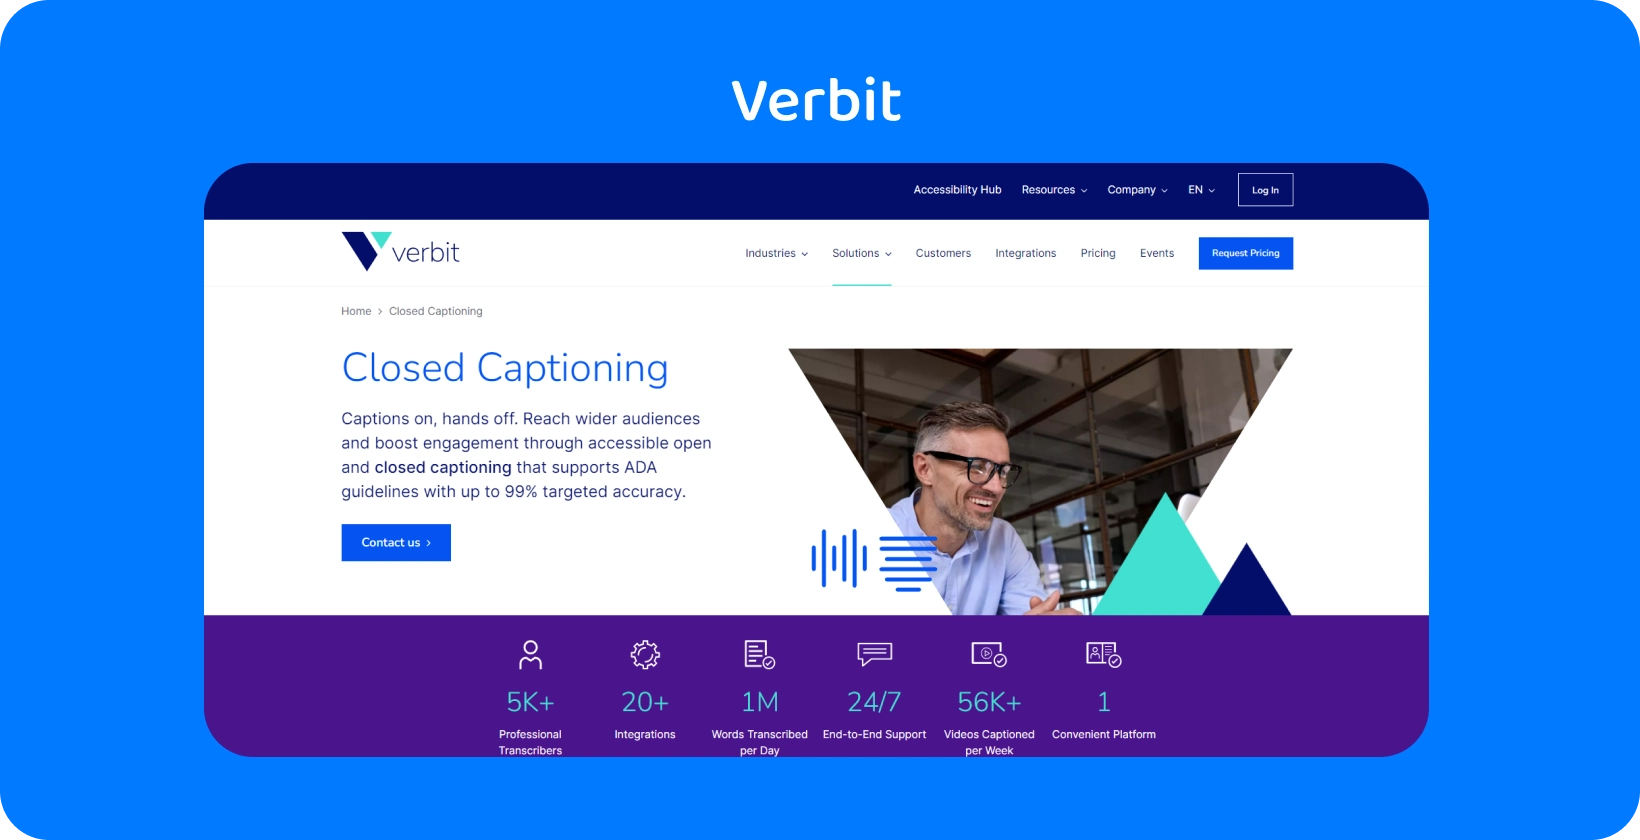 Strona usługi napisów i transkrypcji firmy Verbit, oferująca dedykowane wsparcie i opcje samoobsługi.